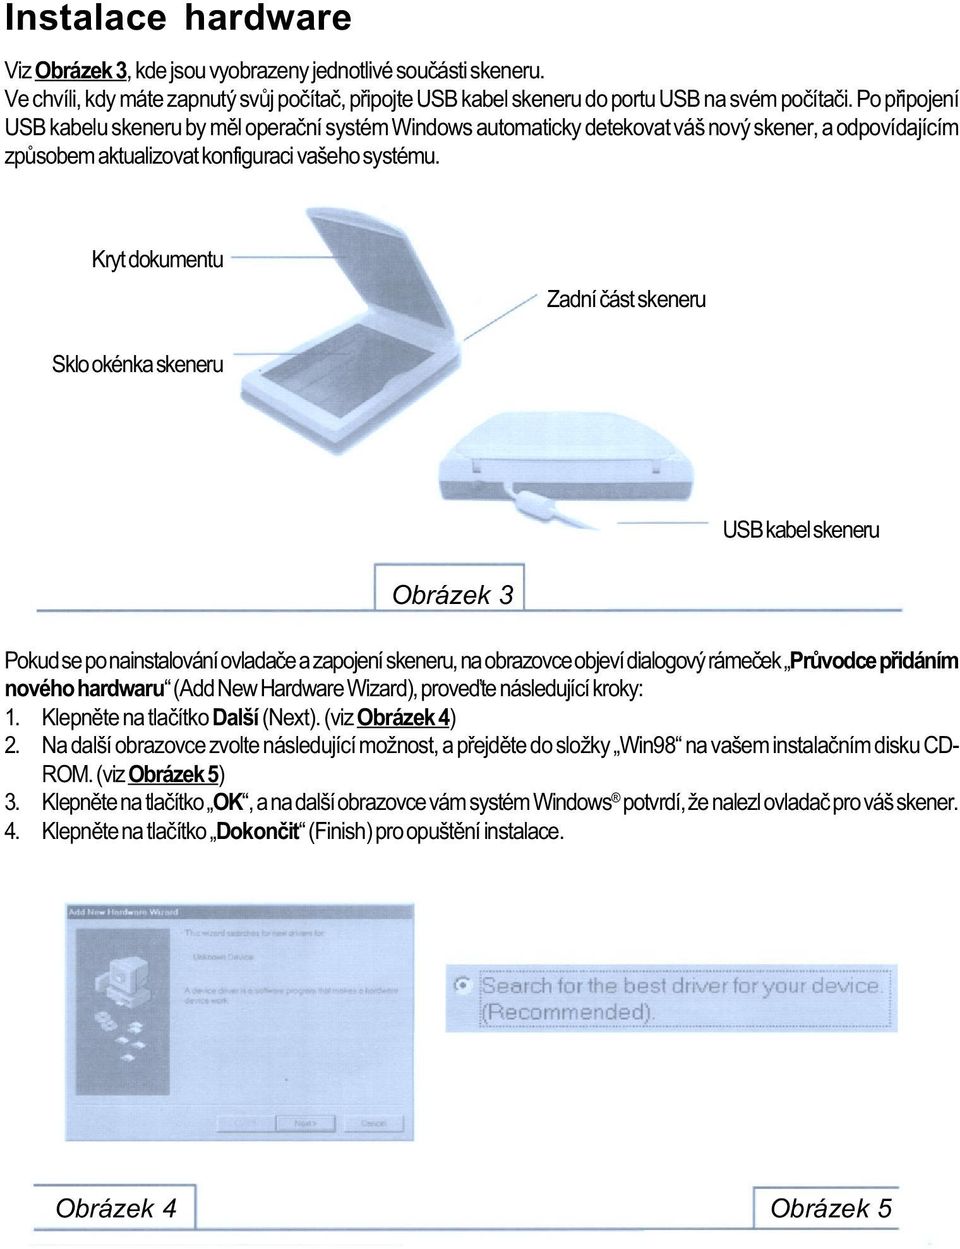 Kryt dokumentu Zadní èást skeneru Sklo okénka skeneru USB kabel skeneru Obrázek 3 Pokud se po nainstalování ovladaèe a zapojení skeneru, na obrazovce objeví dialogový rámeèek Prùvodce pøidáním nového